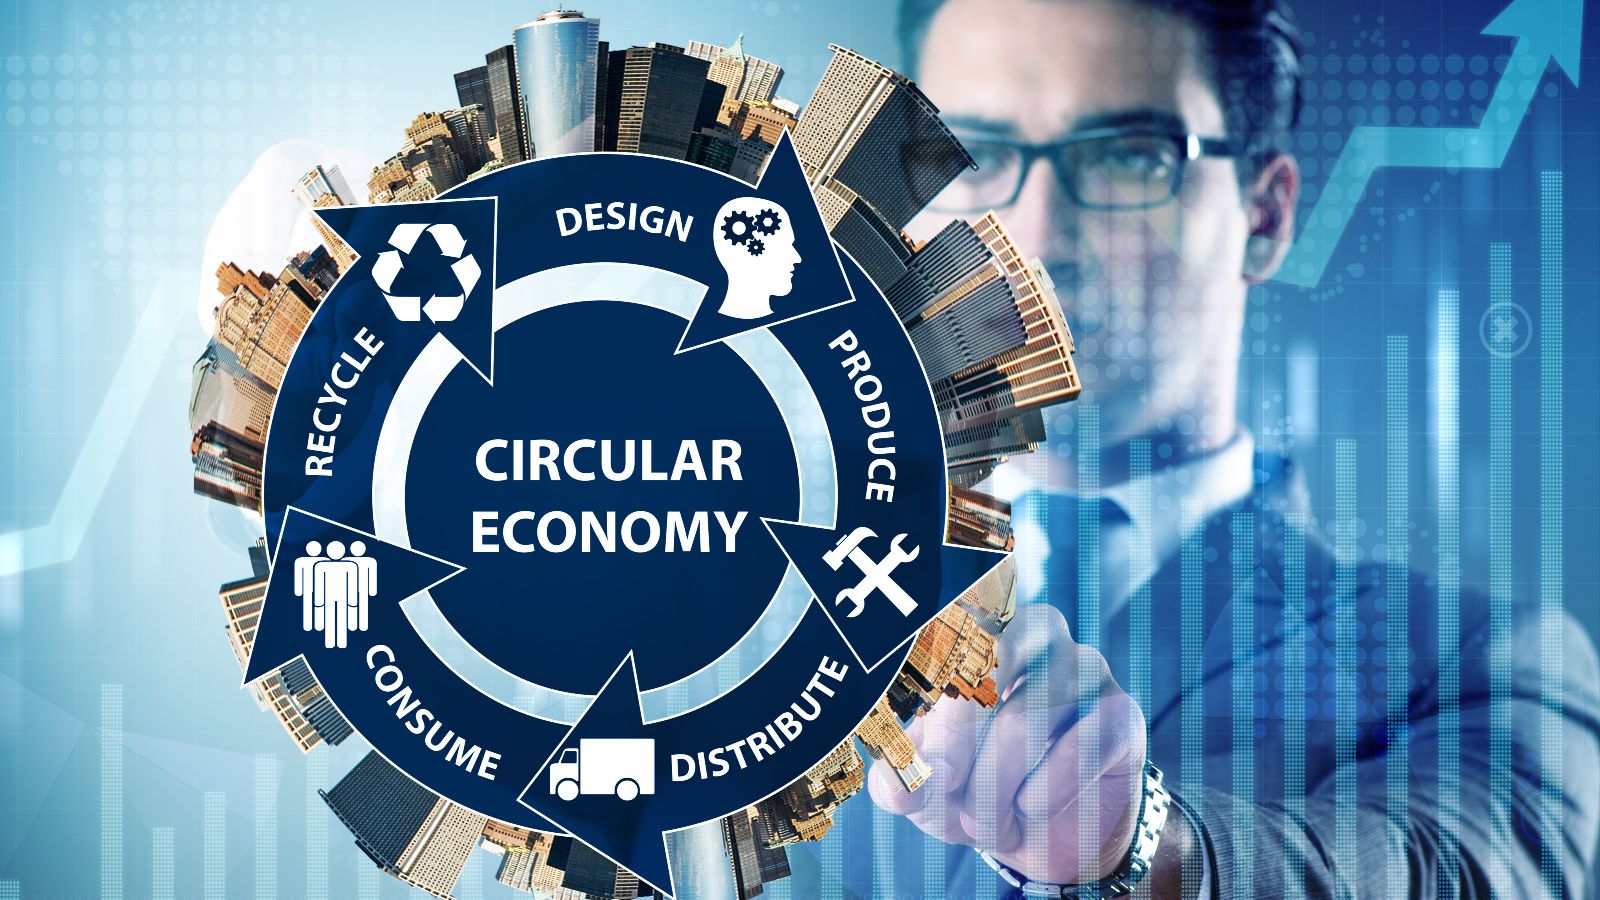 Das Bild zeigt einen Mann, der mit seiner Hand auf eine Zeichnung einer Stadt zeigt. Davor befindet sich ein blauer Kreislauf mit dem Wort Circular Economy im Zentrum und verschiedenen Begriffen die damit im Zusammenhang stehen.